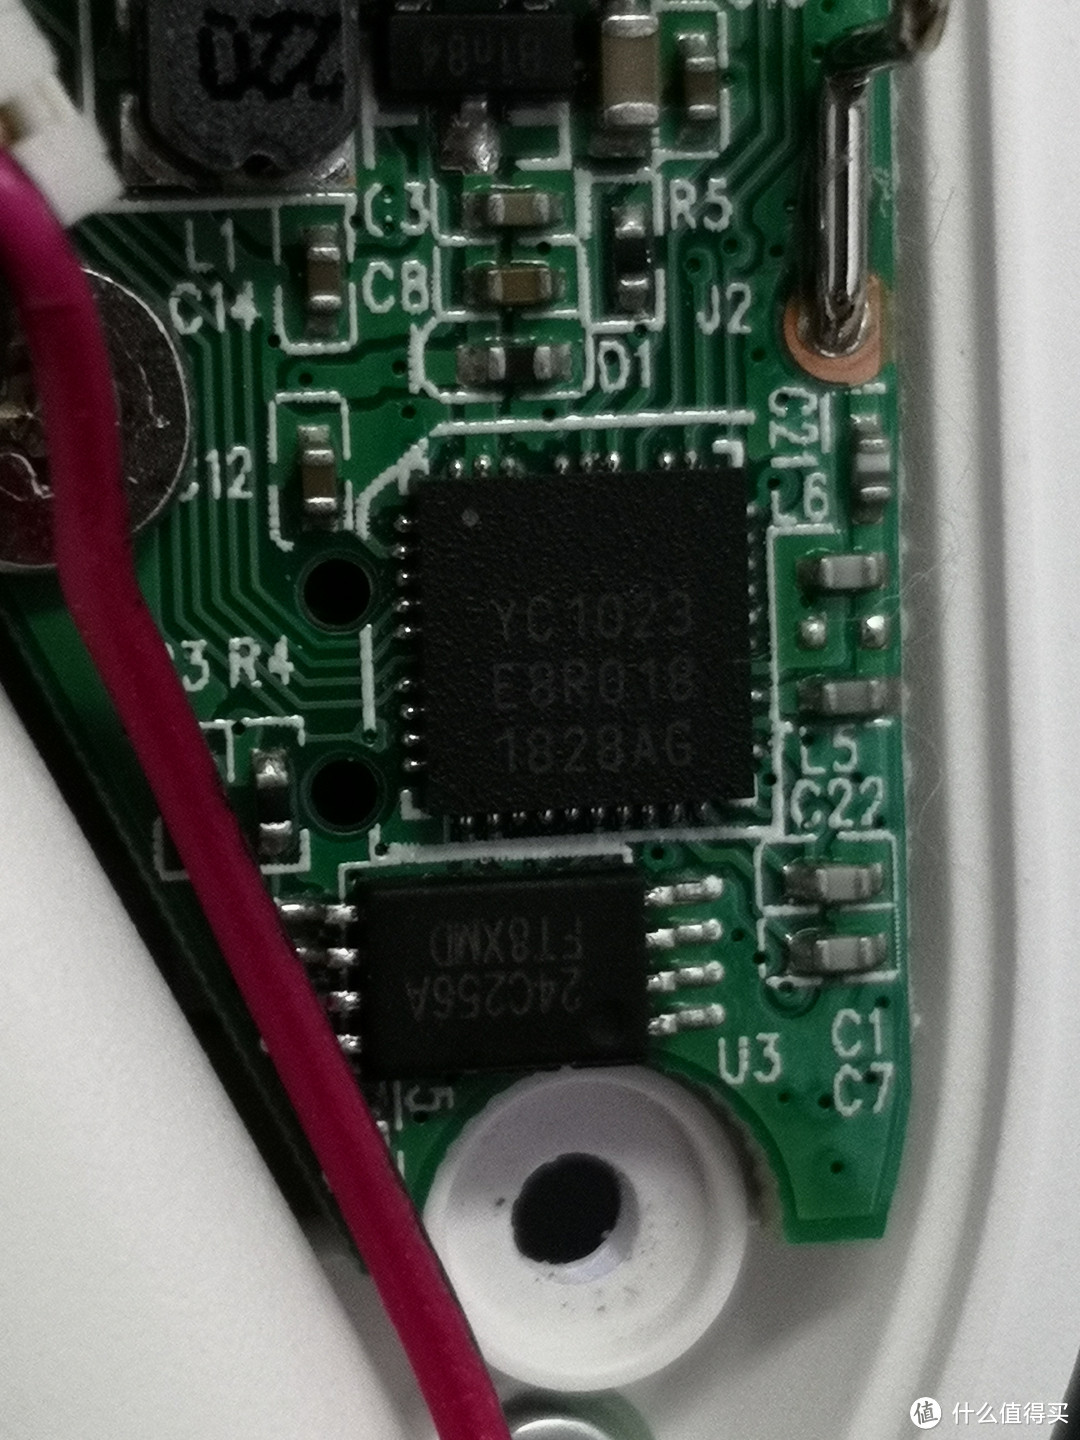 鼠标控制芯片是YC1023，没查到资料，估计是定制的